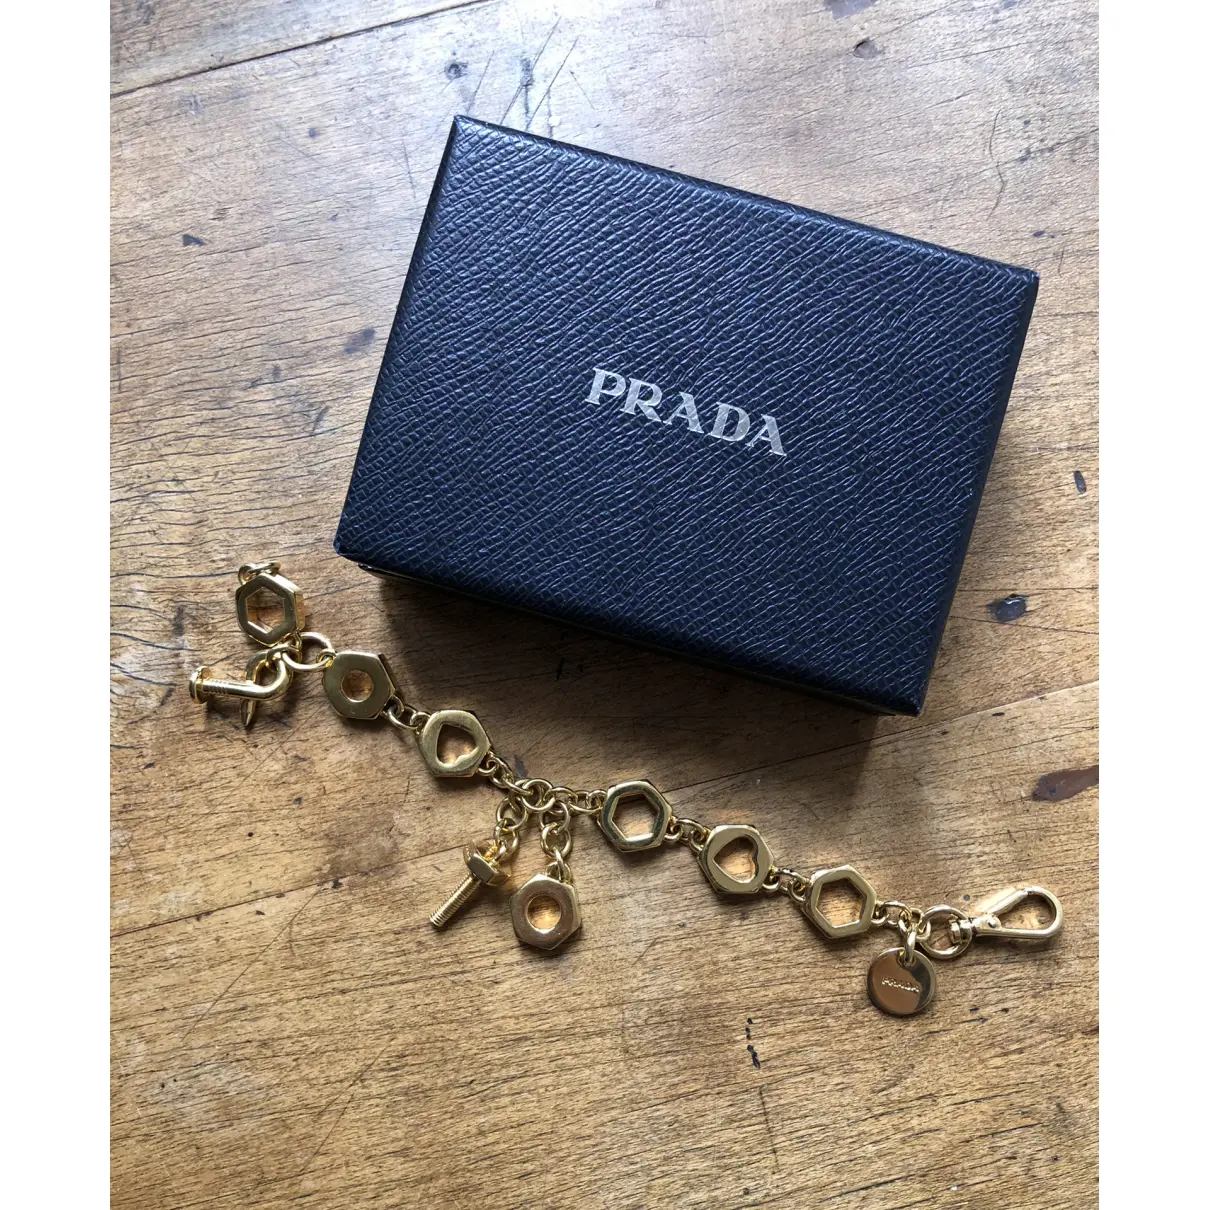 Buy Prada Bracelet online